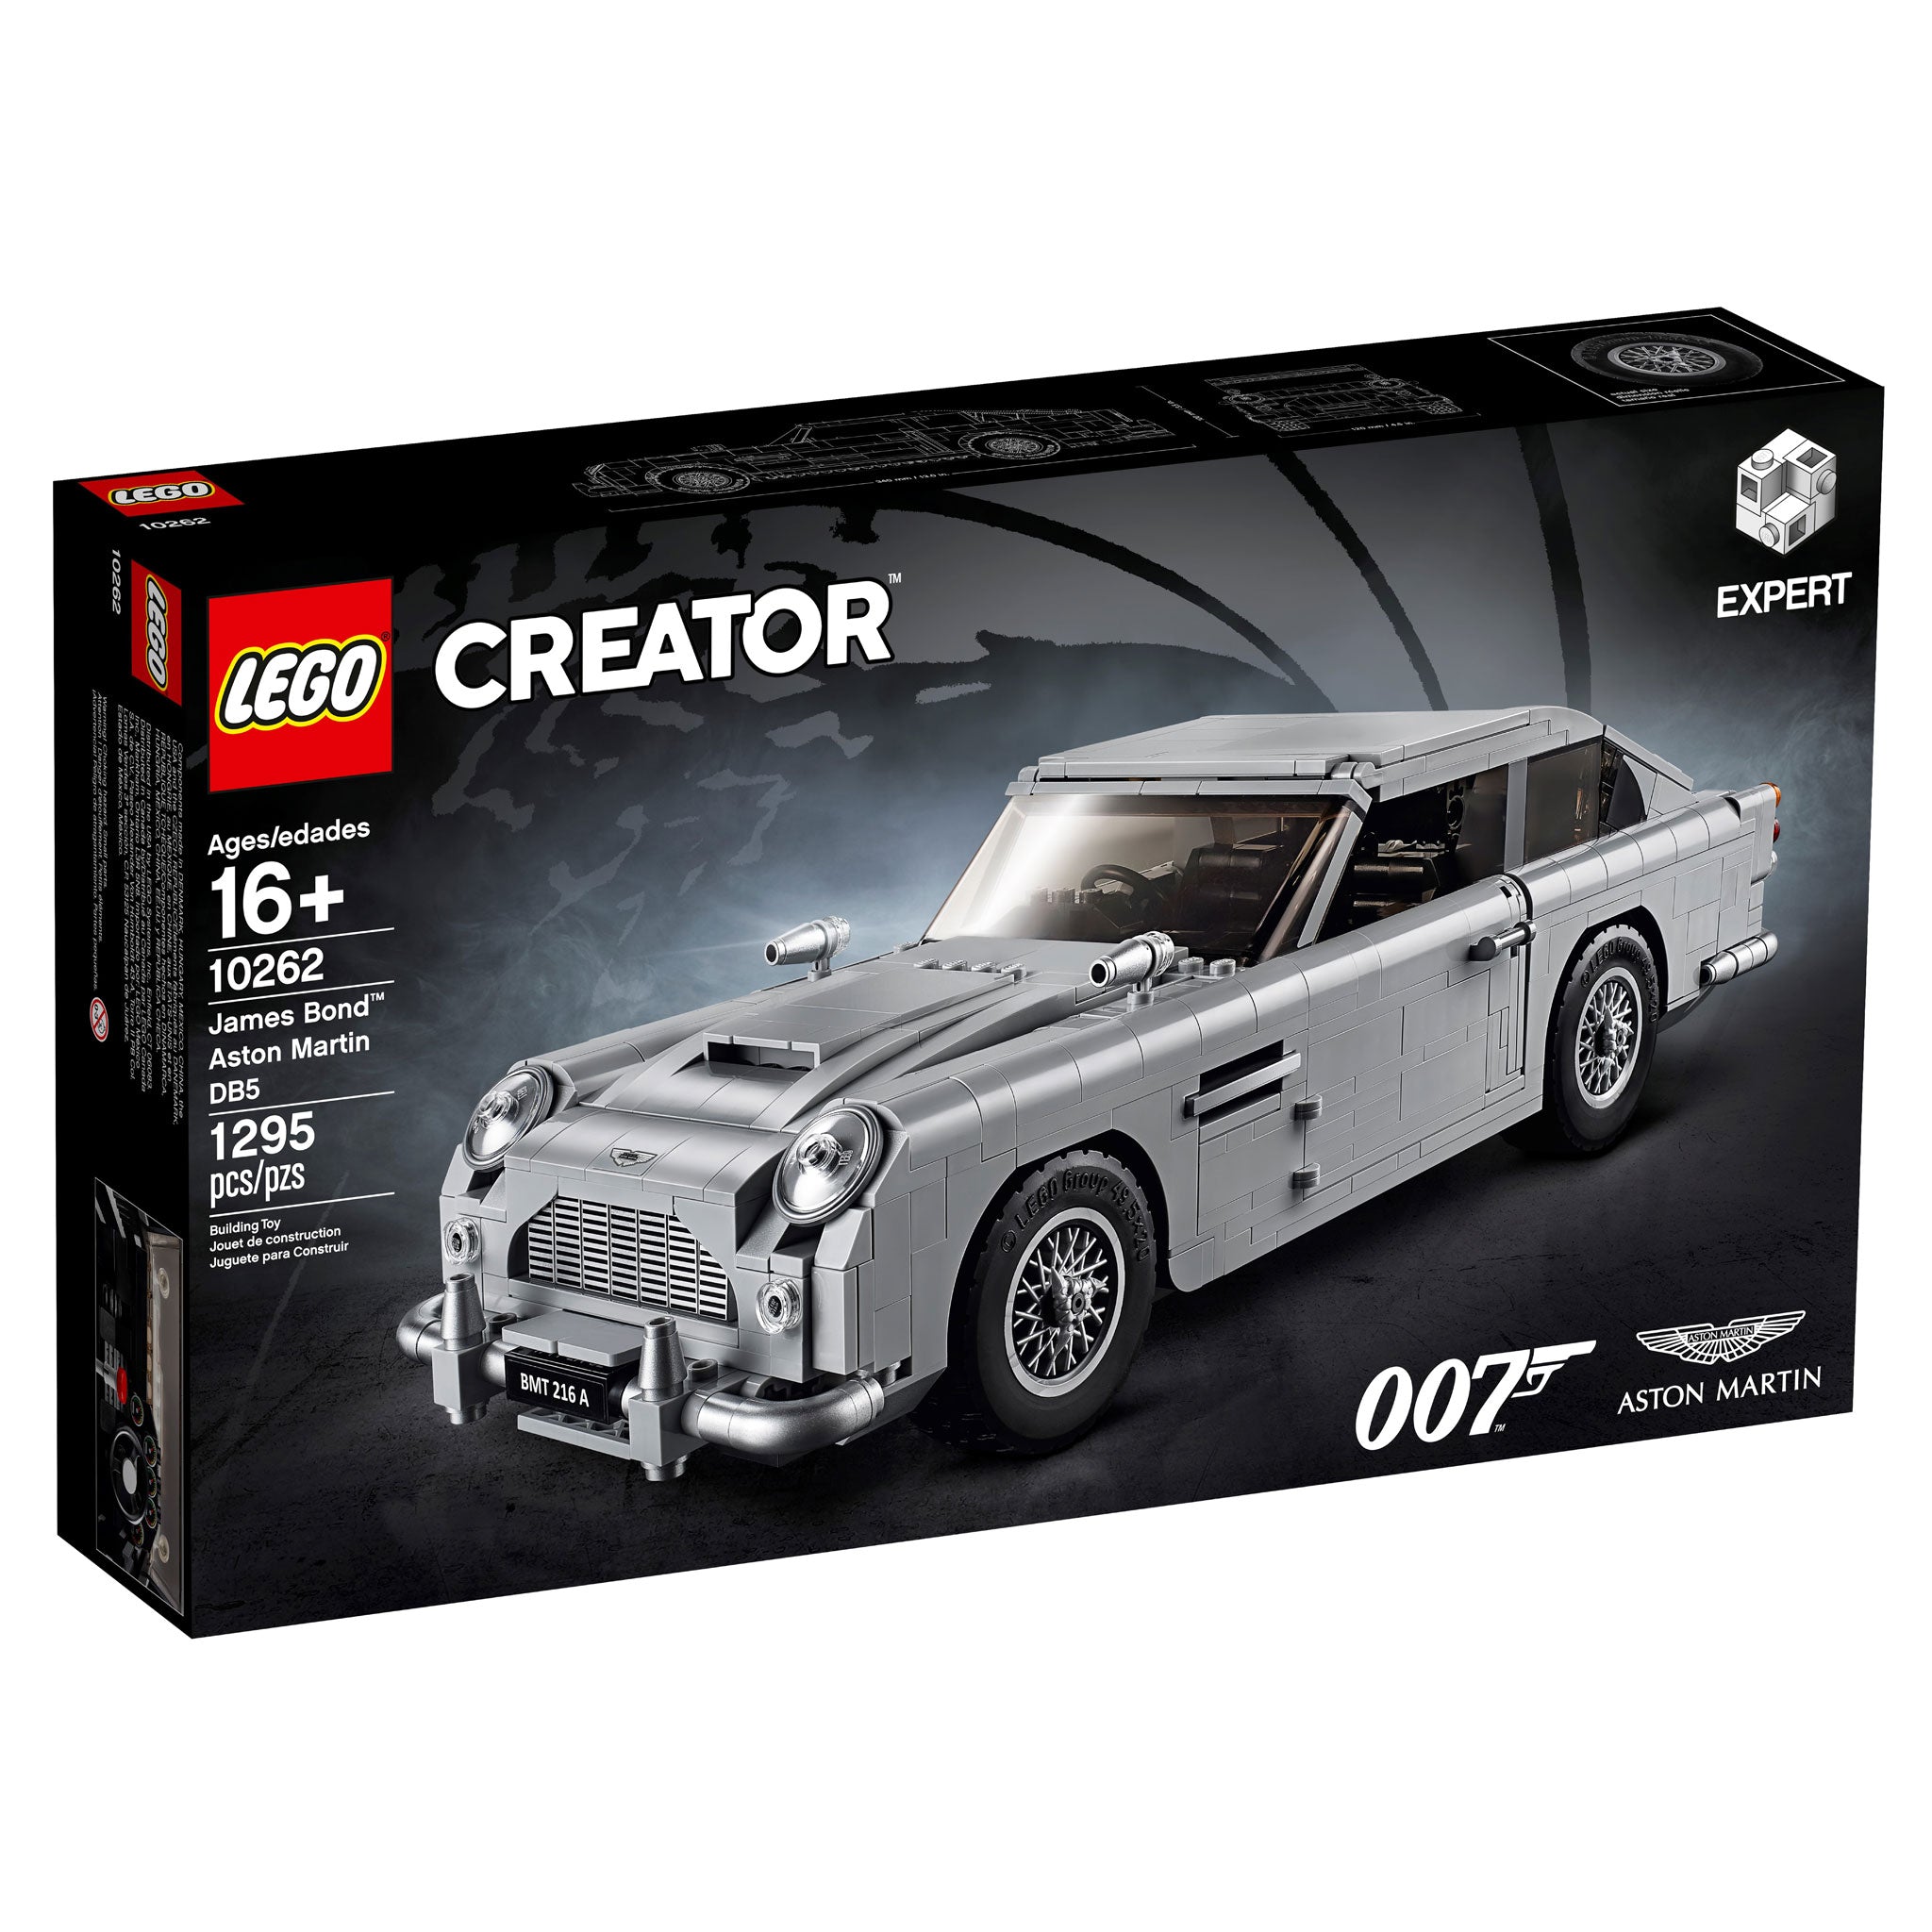 LEGO Creator Expert James Bond Aston Martin DB5 (10262) - im GOLDSTIEN.SHOP verfügbar mit Gratisversand ab Schweizer Lager! (5702016111828)